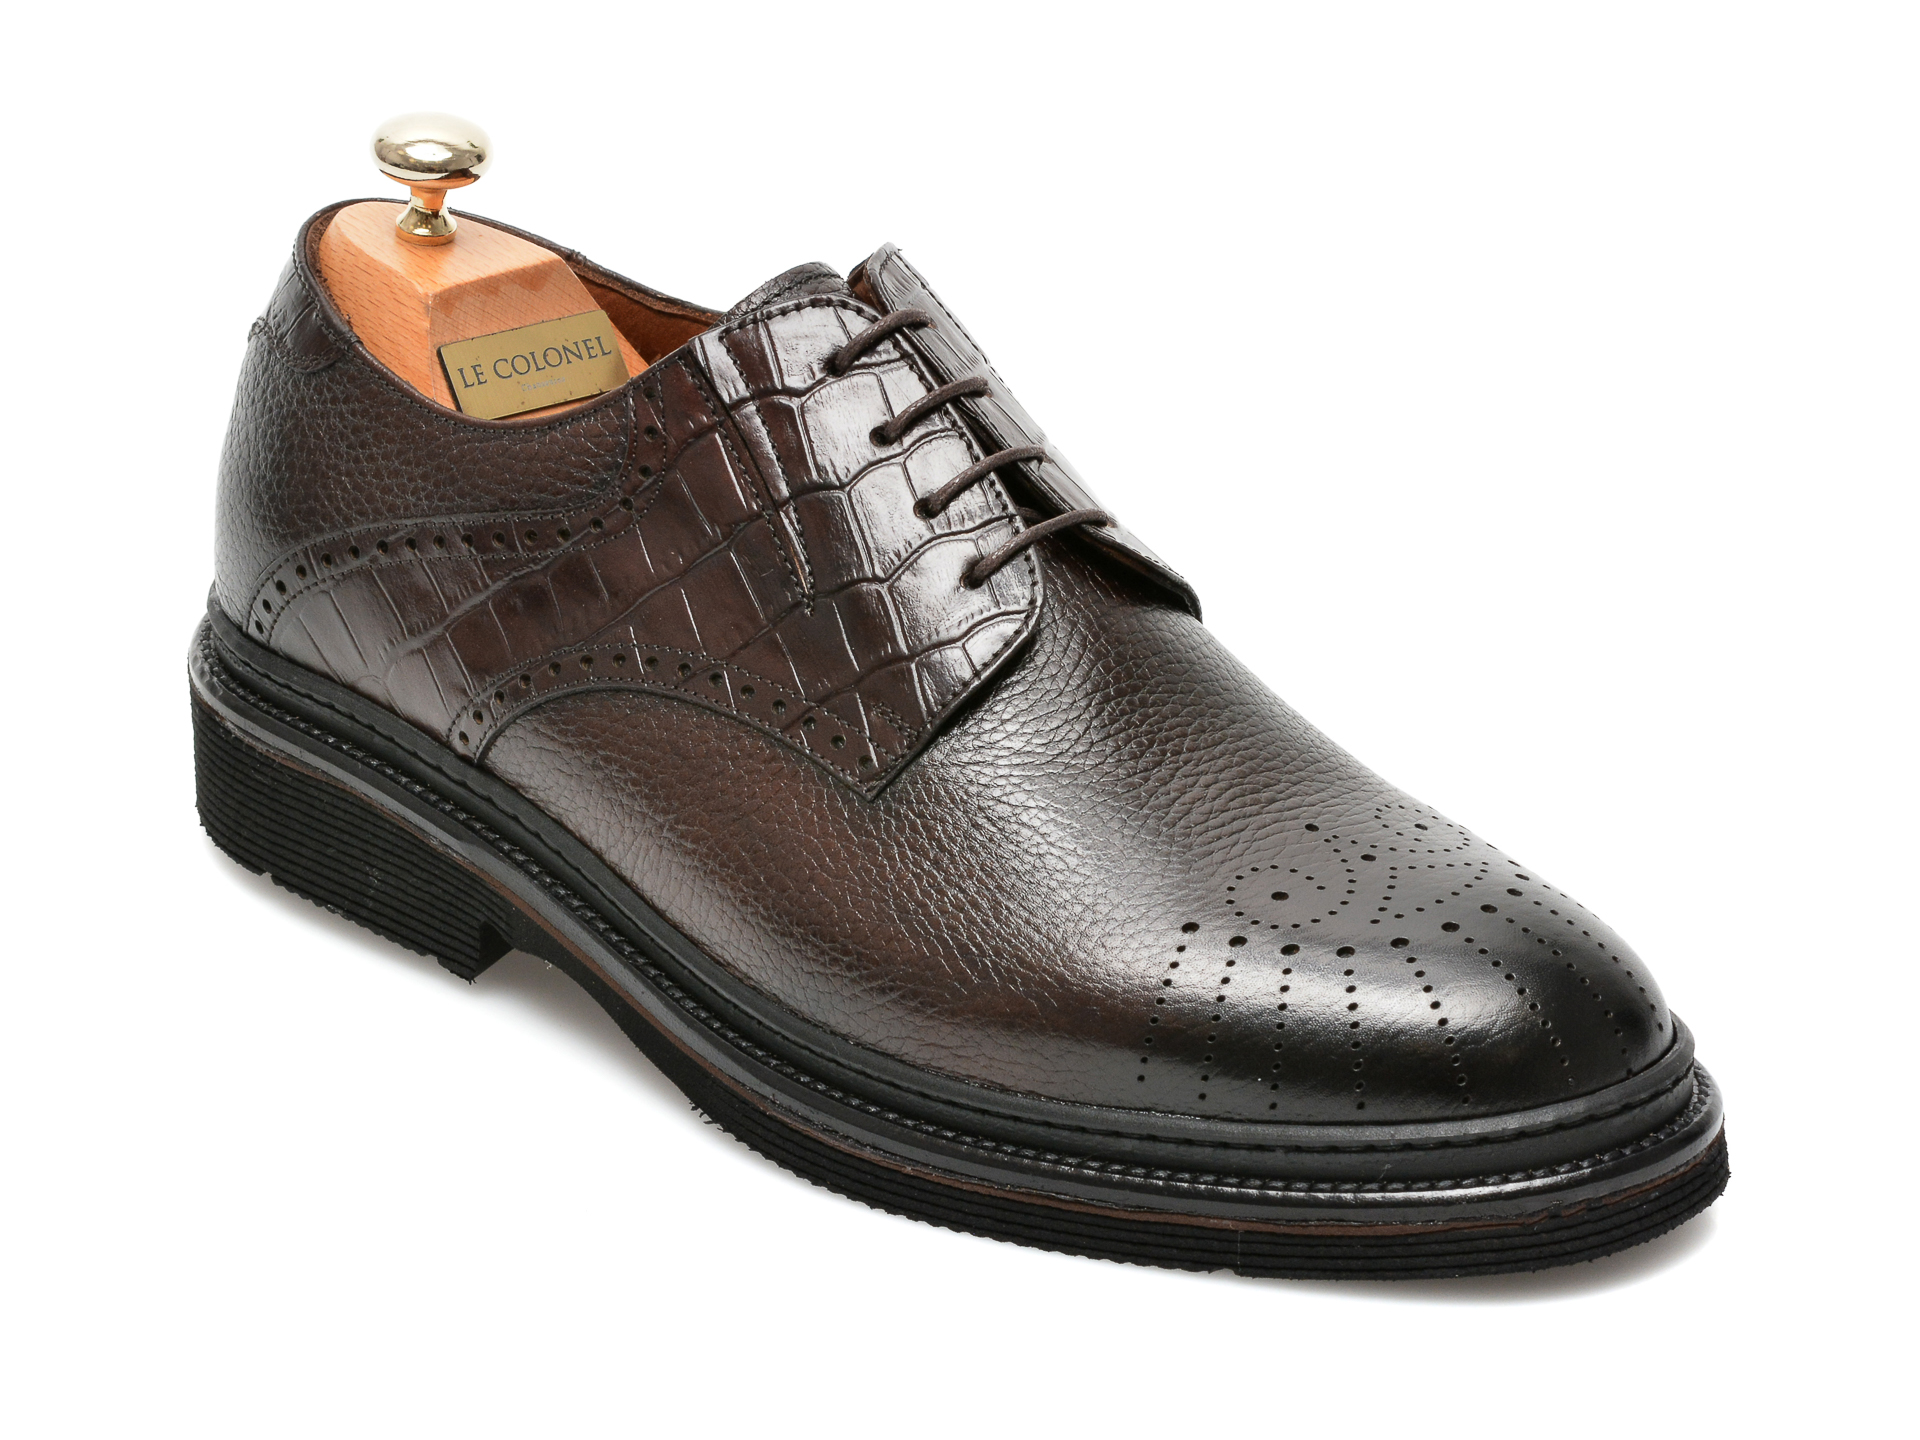 Pantofi LE COLONEL maro, 61722, din piele naturala Le Colonel imagine noua